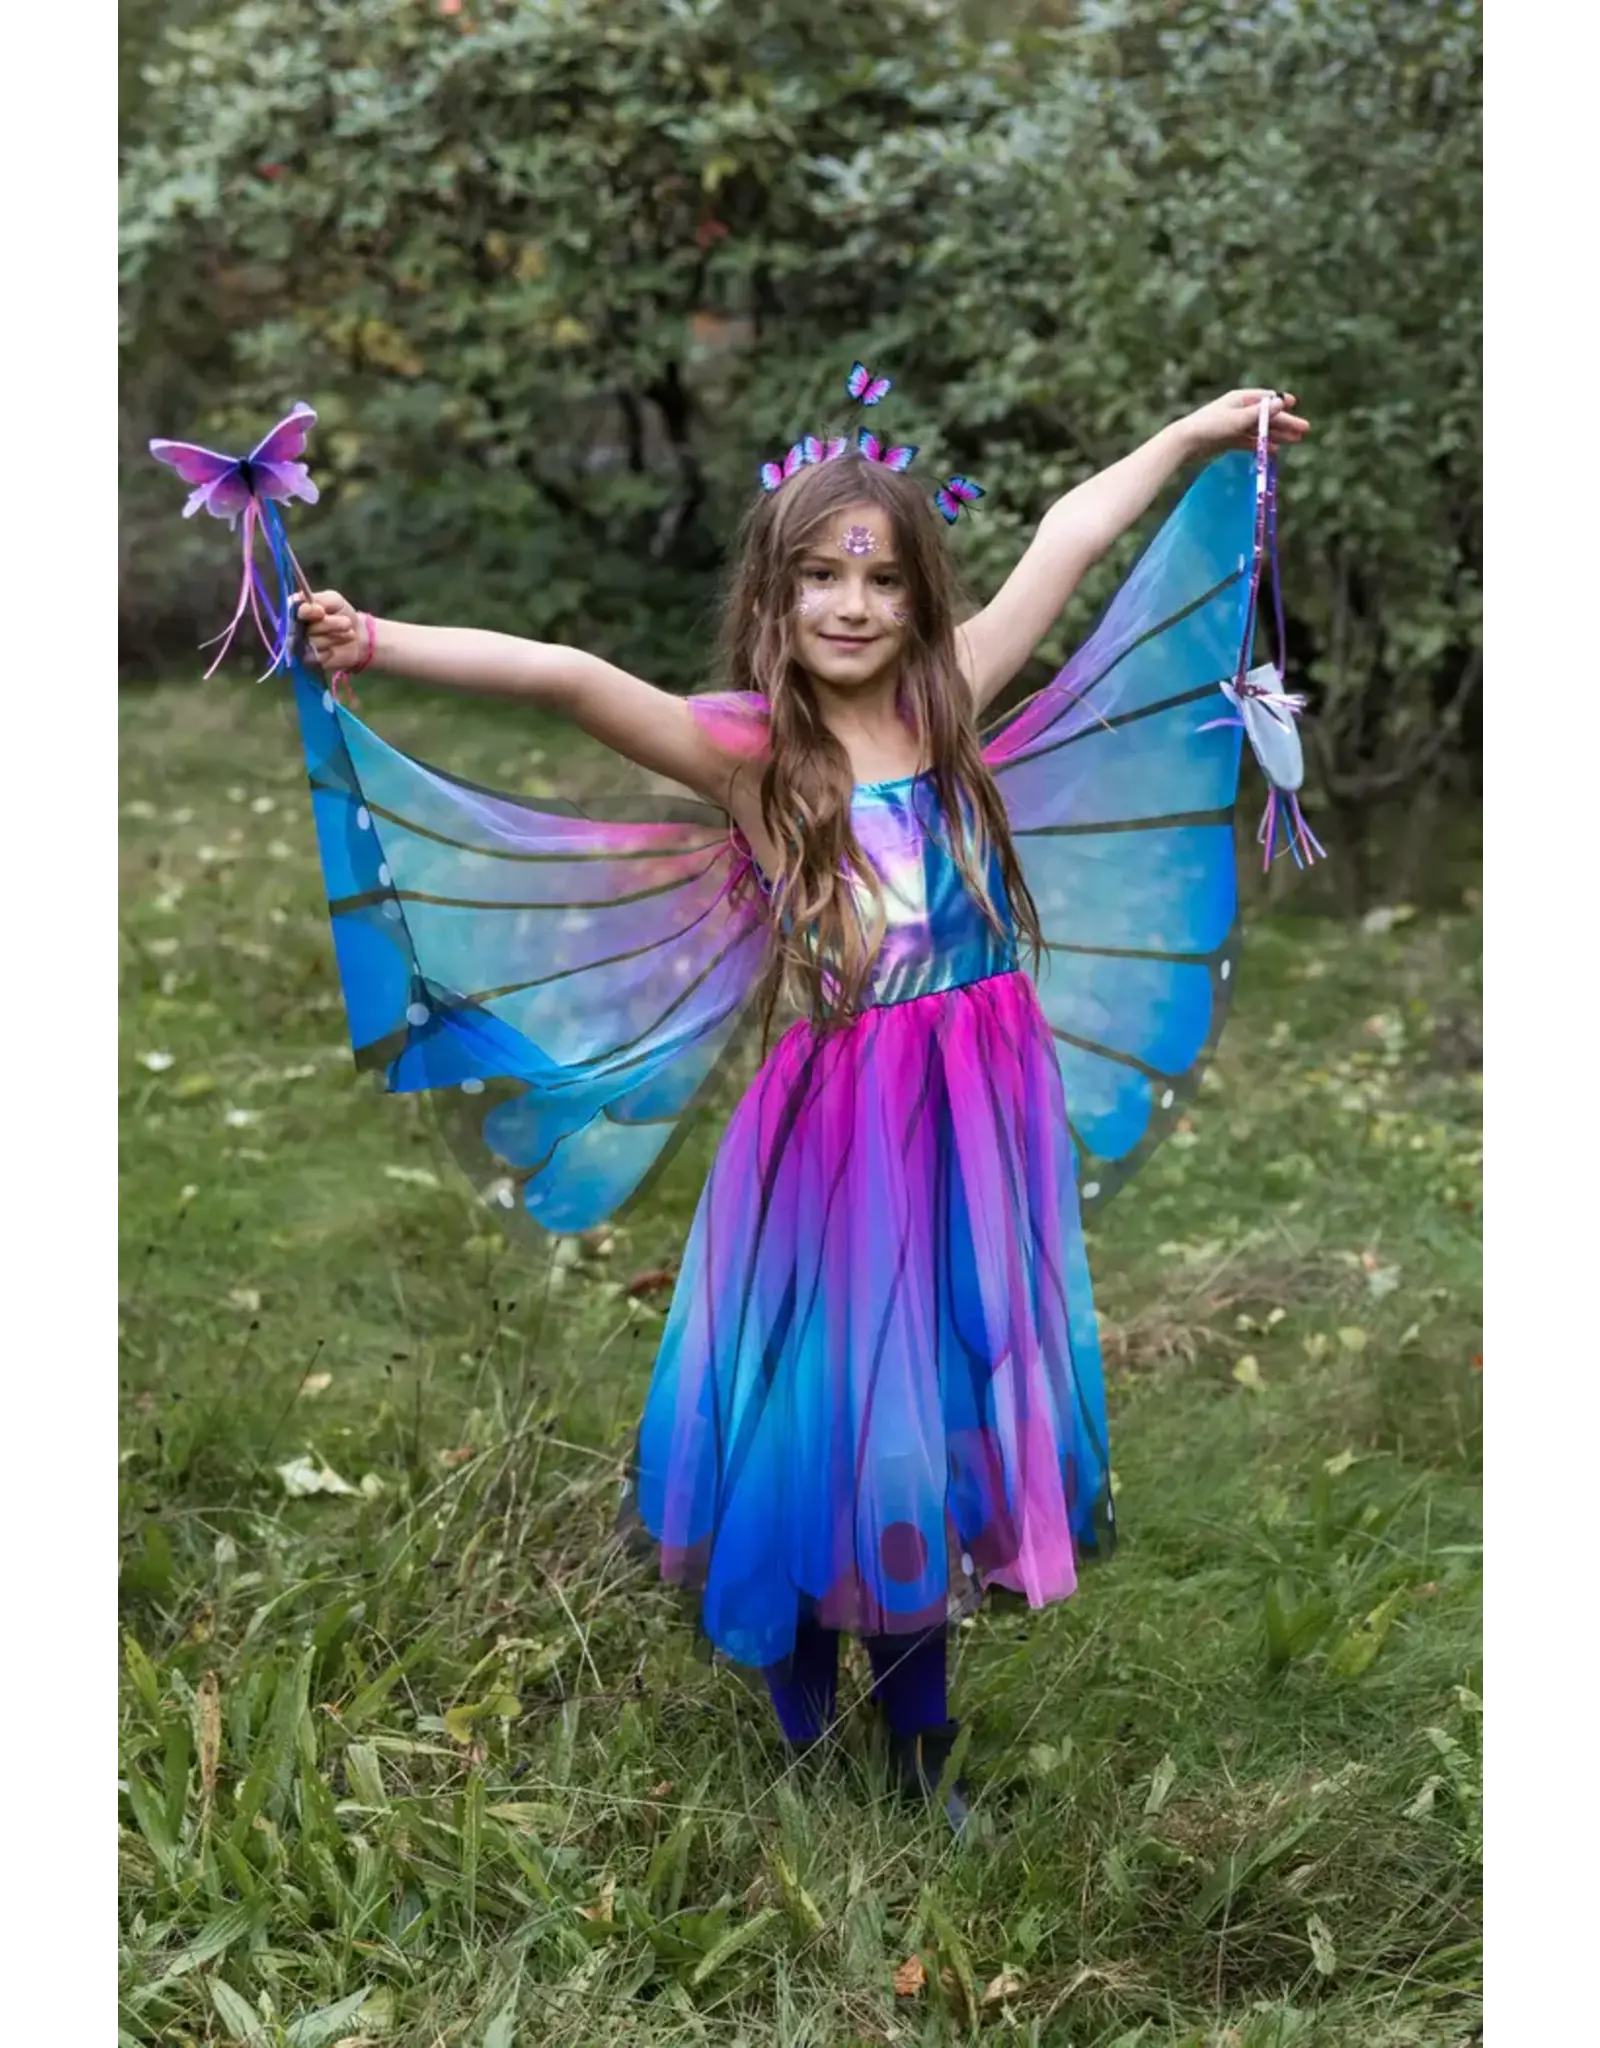 Great Pretenders Blue Butterfly Twirl Dress with Wings & Headband Size 5-6